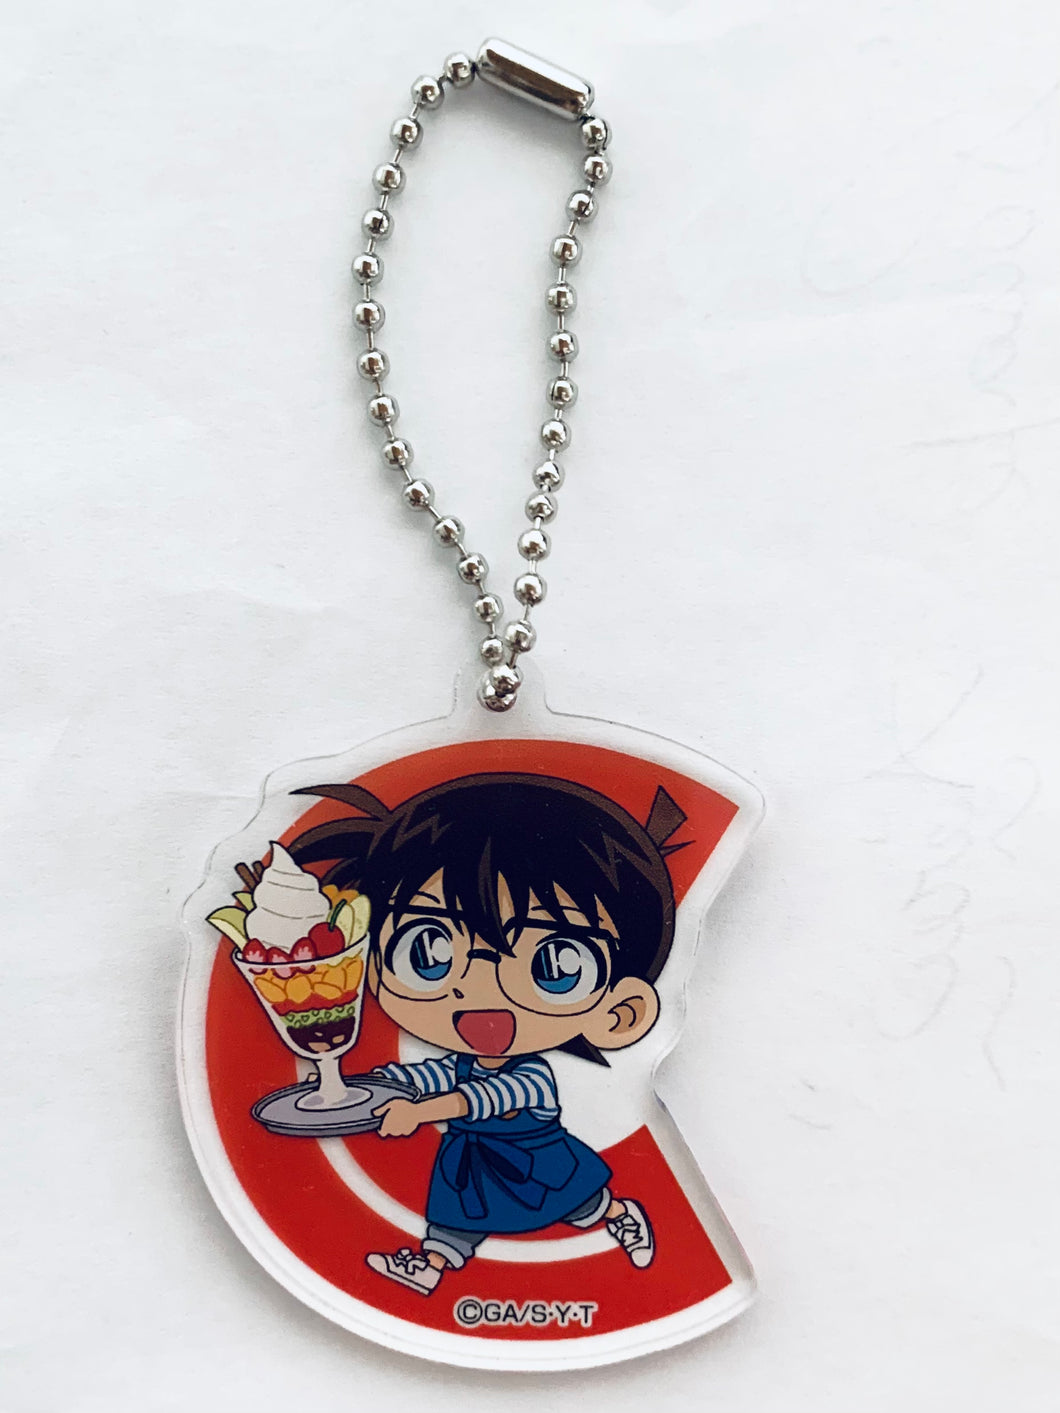 Detective Conan - Edogawa Conan - DC Cafe 2018 Acrylic Keychain